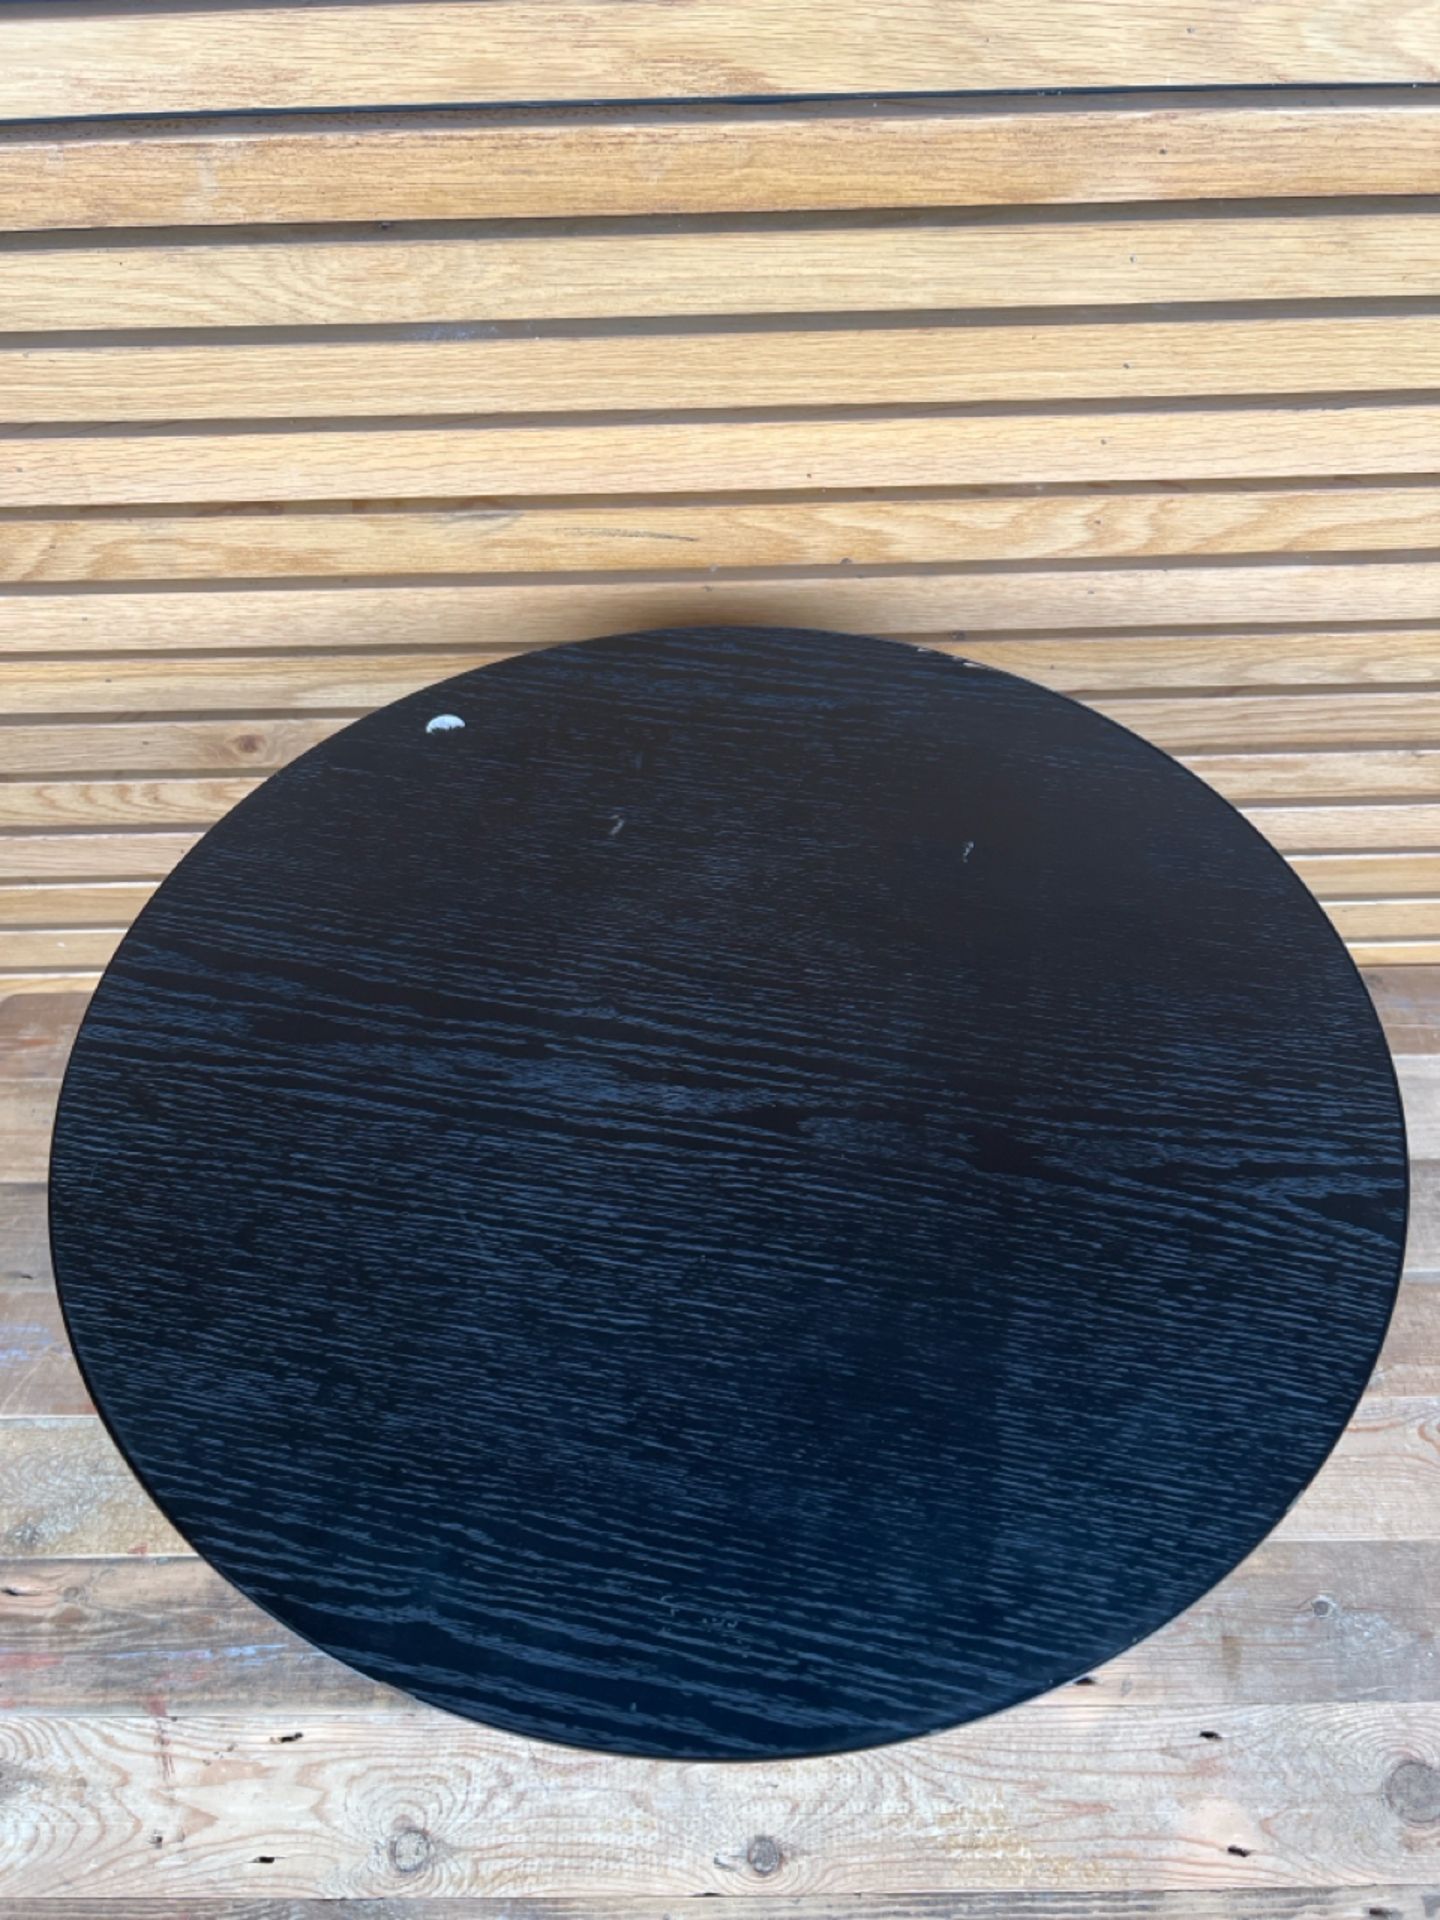 Normann Copenhagen Black Turn Table - Image 3 of 4